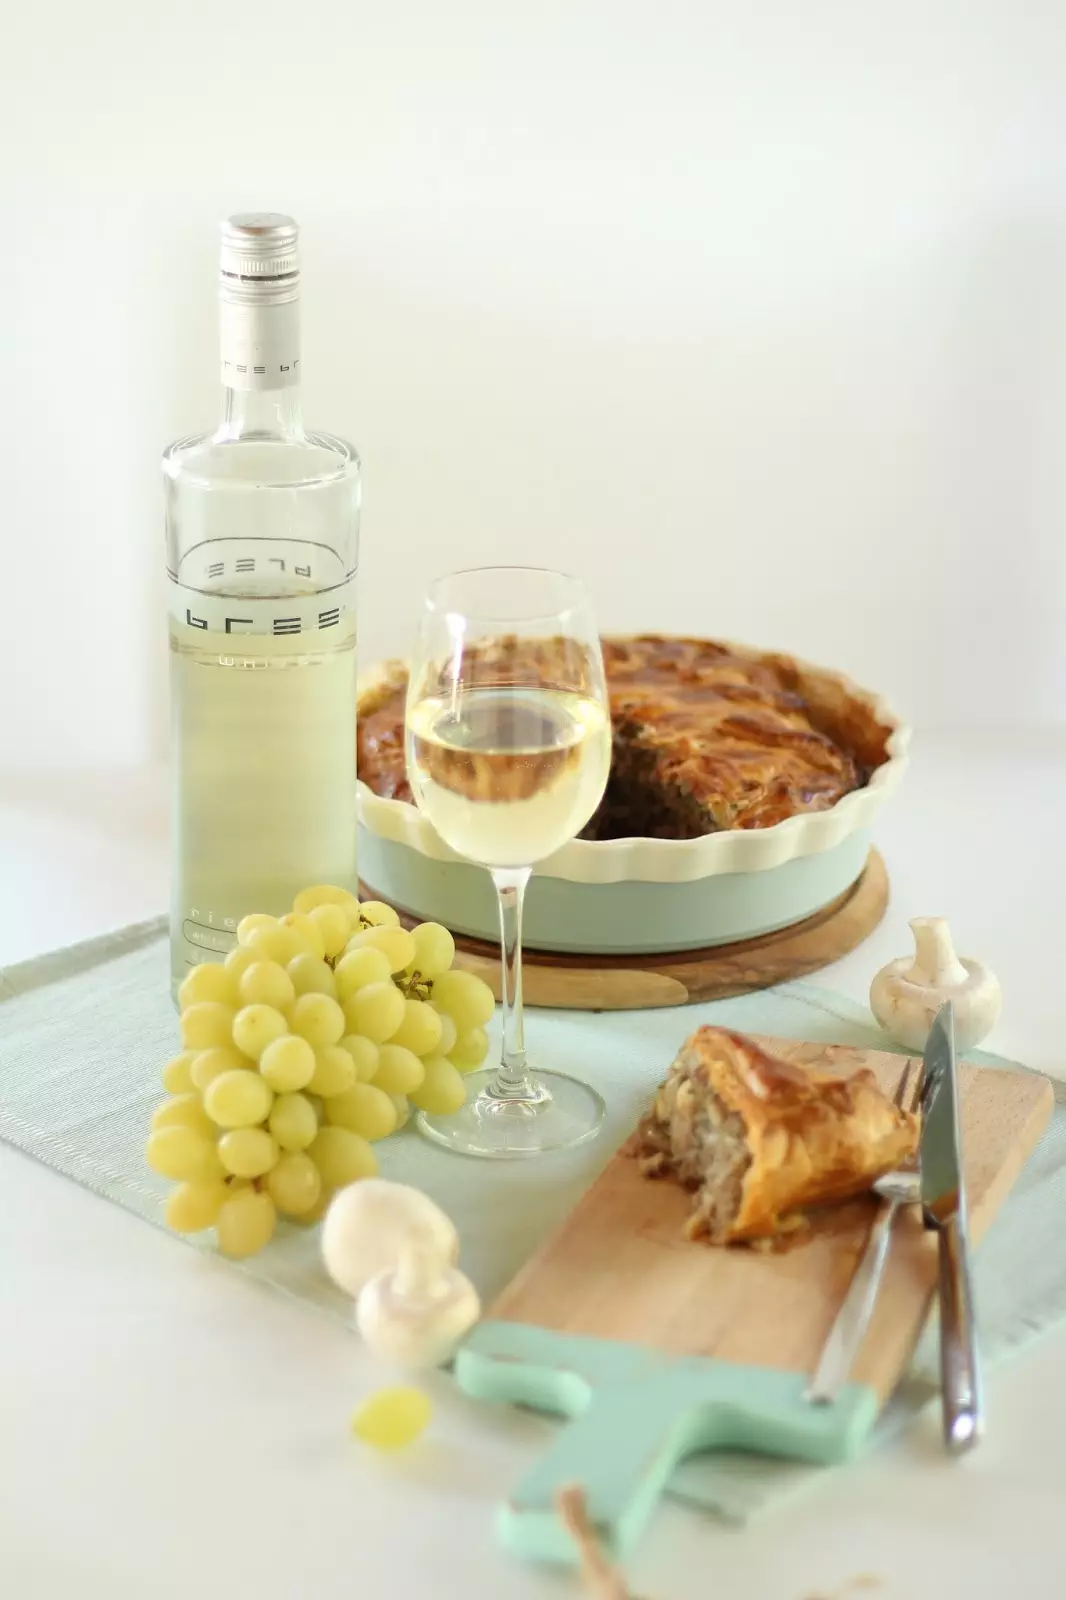 Herbstliche Pastete mit Champignons und Hackfleisch - dazu ein Glas Bree Wein